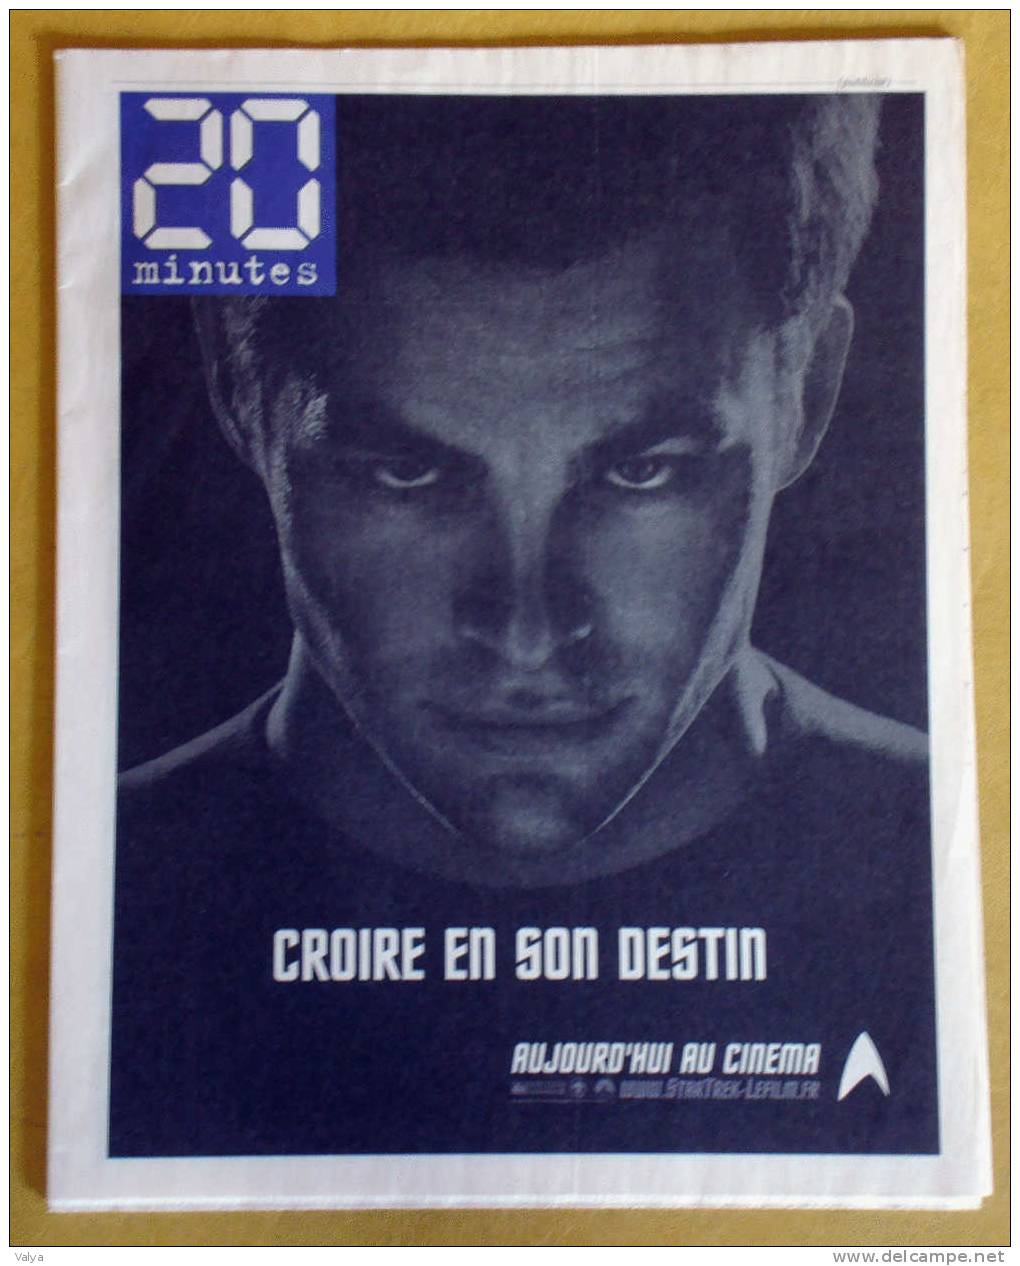 Publicités Pour La Sortie Du Film De STAR TREK Avec Daniel Craig Dans Le Journal 20 MINUTES - Publicité Cinématographique